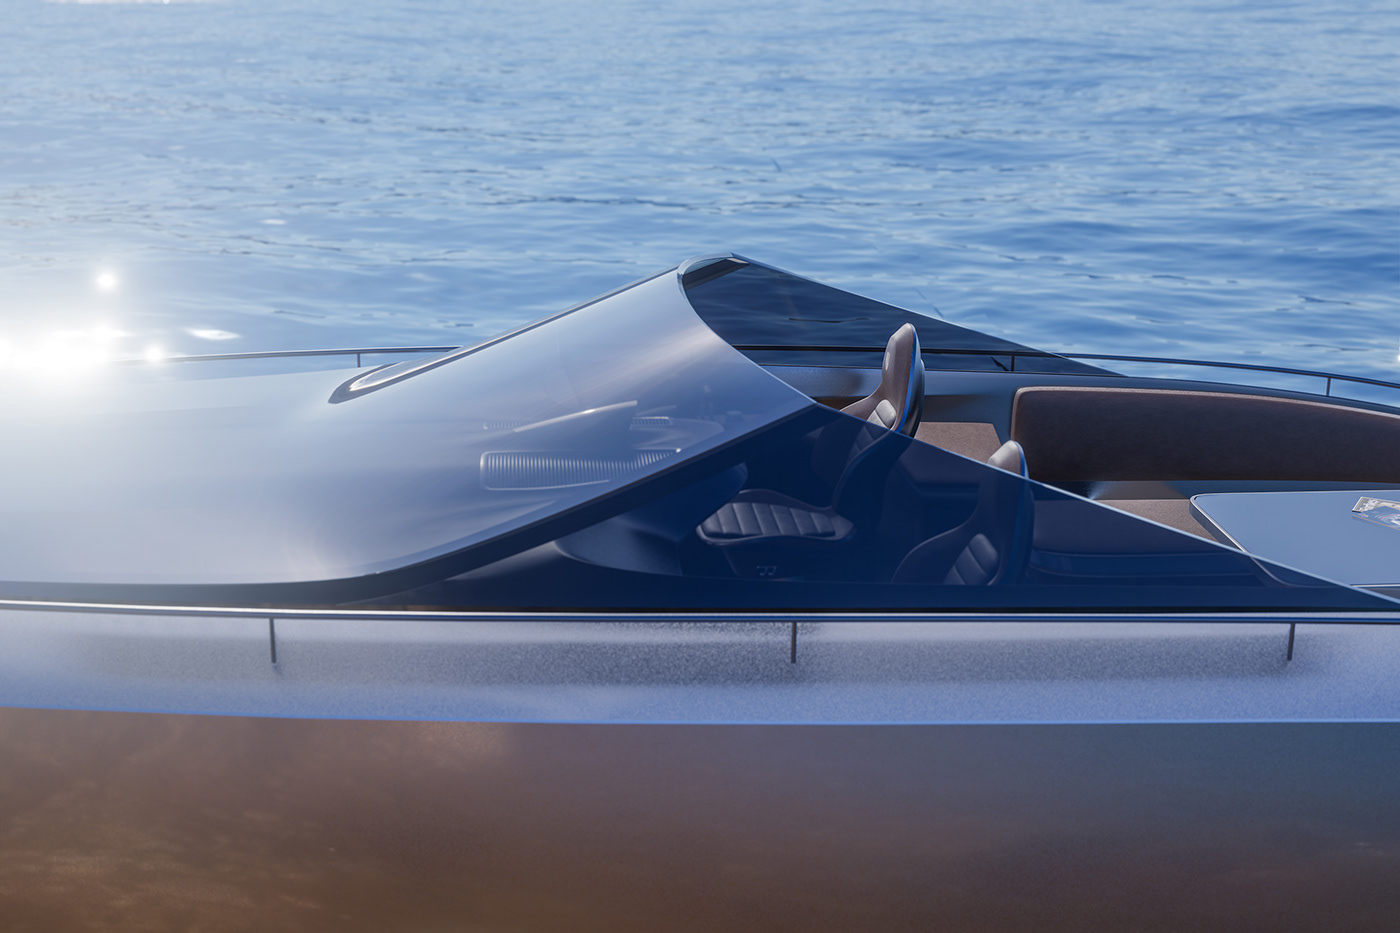 blender boat industrial design  Porsche porsche design speed boat Unreal Vehicle Vehicle Design yacht